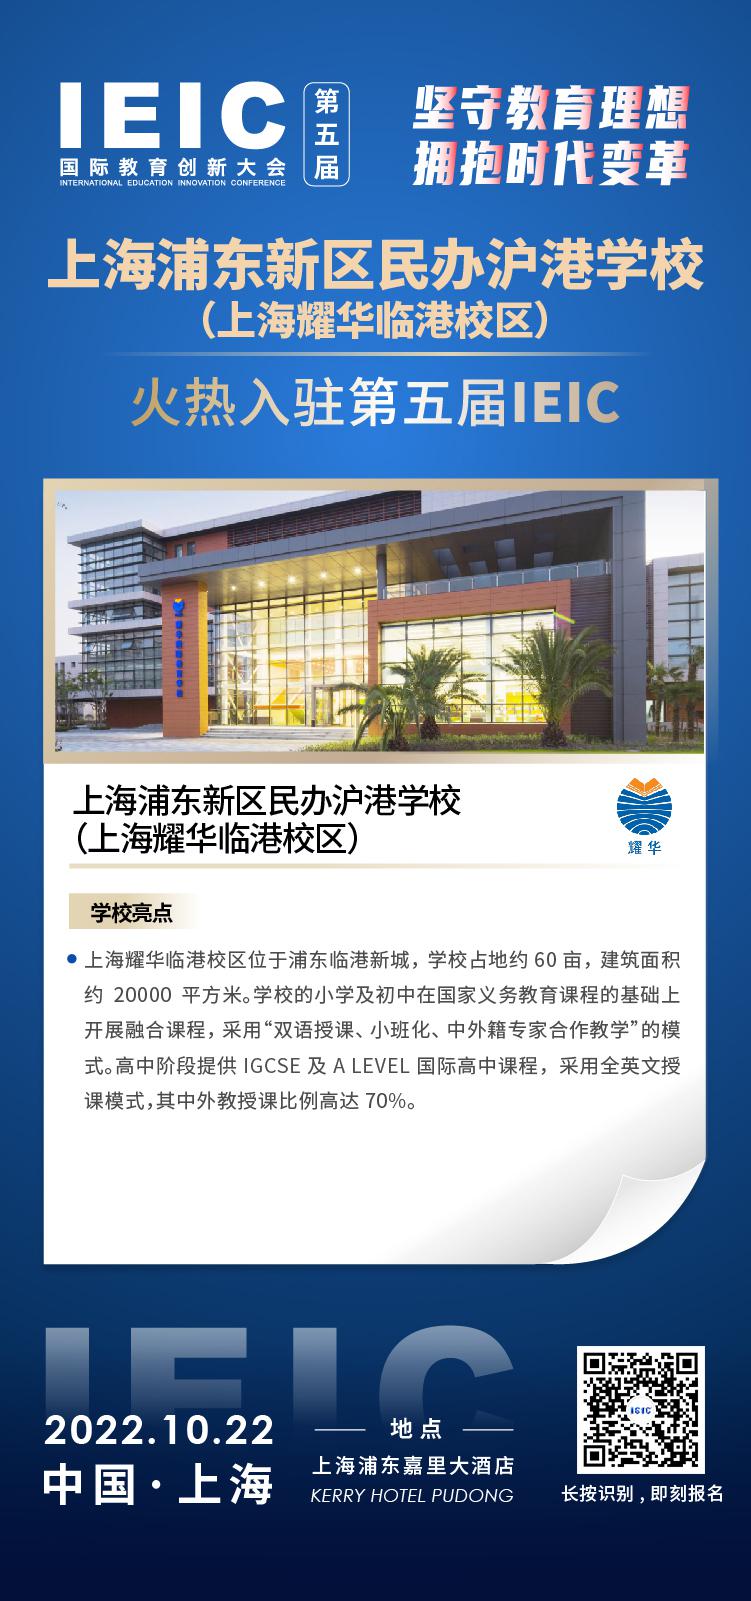 上海耀华临港校区成功入驻参加2022年远播第五届IEIC国际教育创新大会